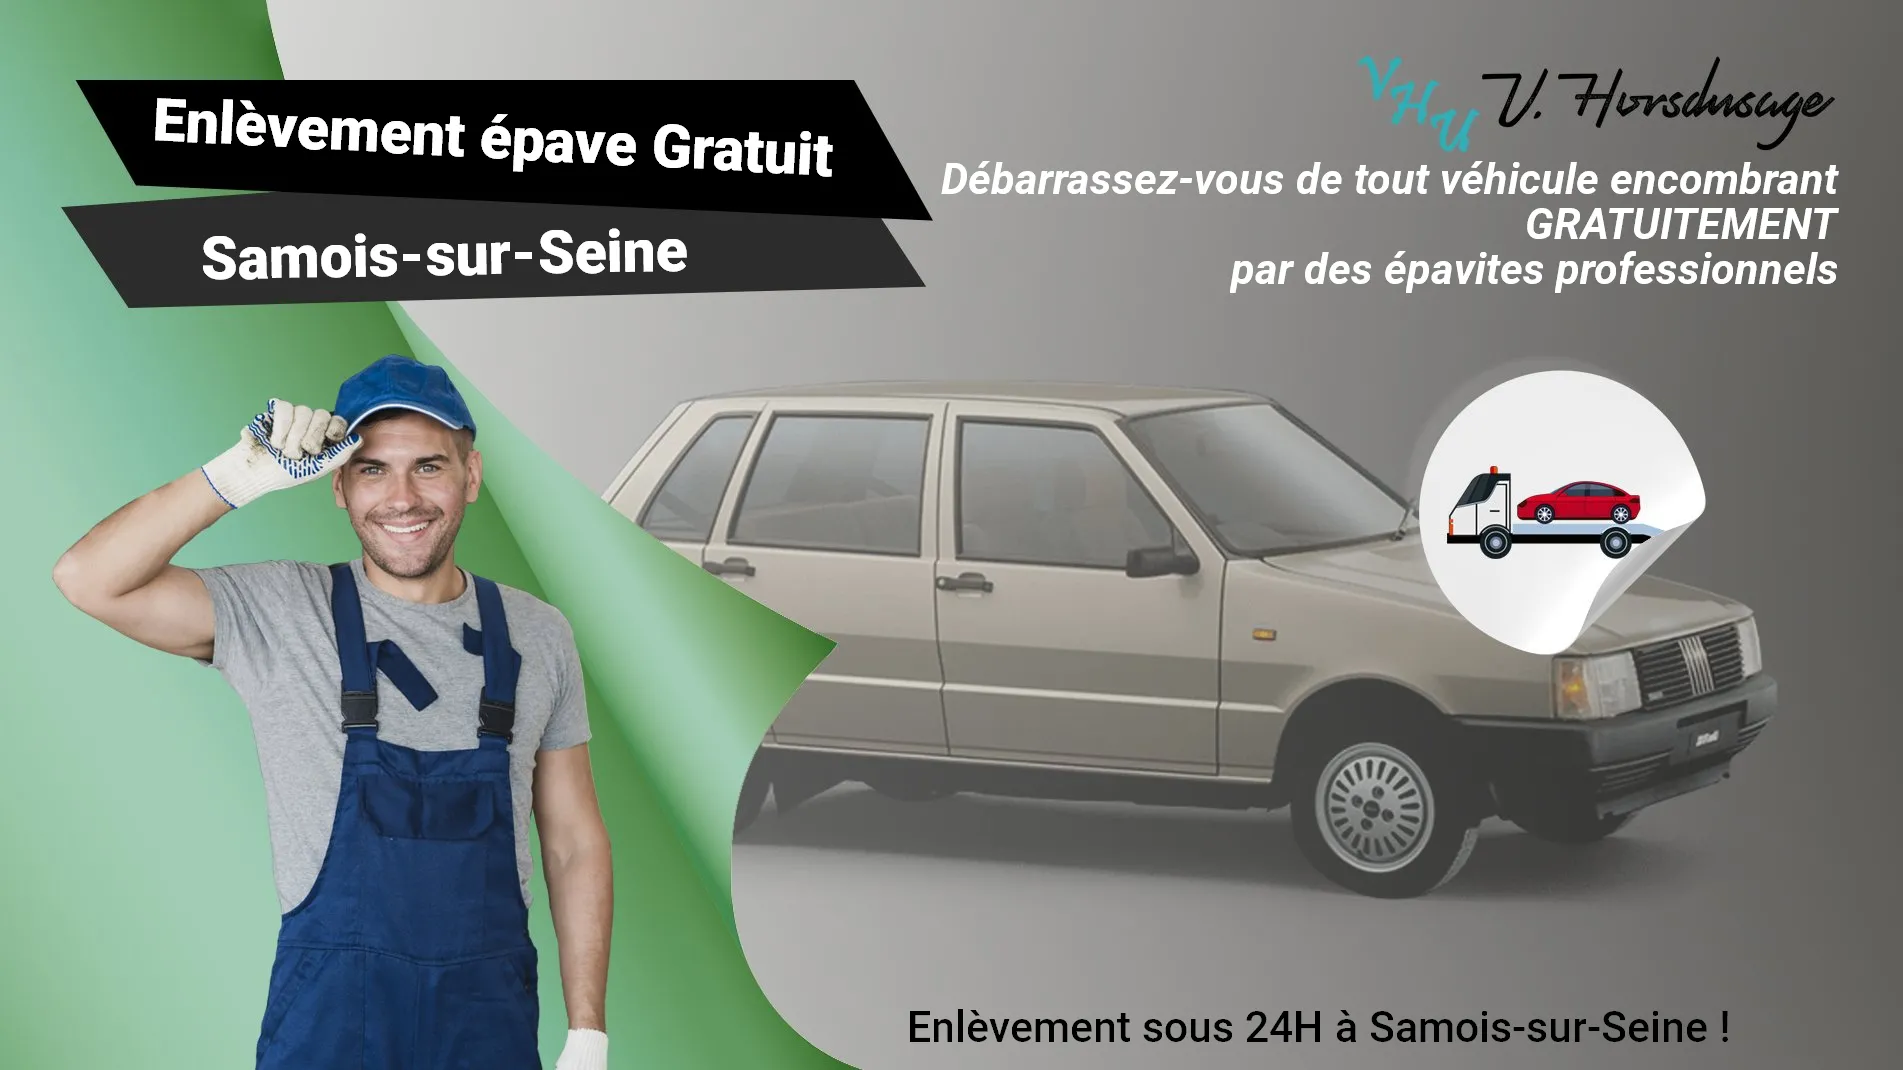 Pour un enlèvement gratuit à Samois-sur-Seine, contactez nos épavistes agréé VHU